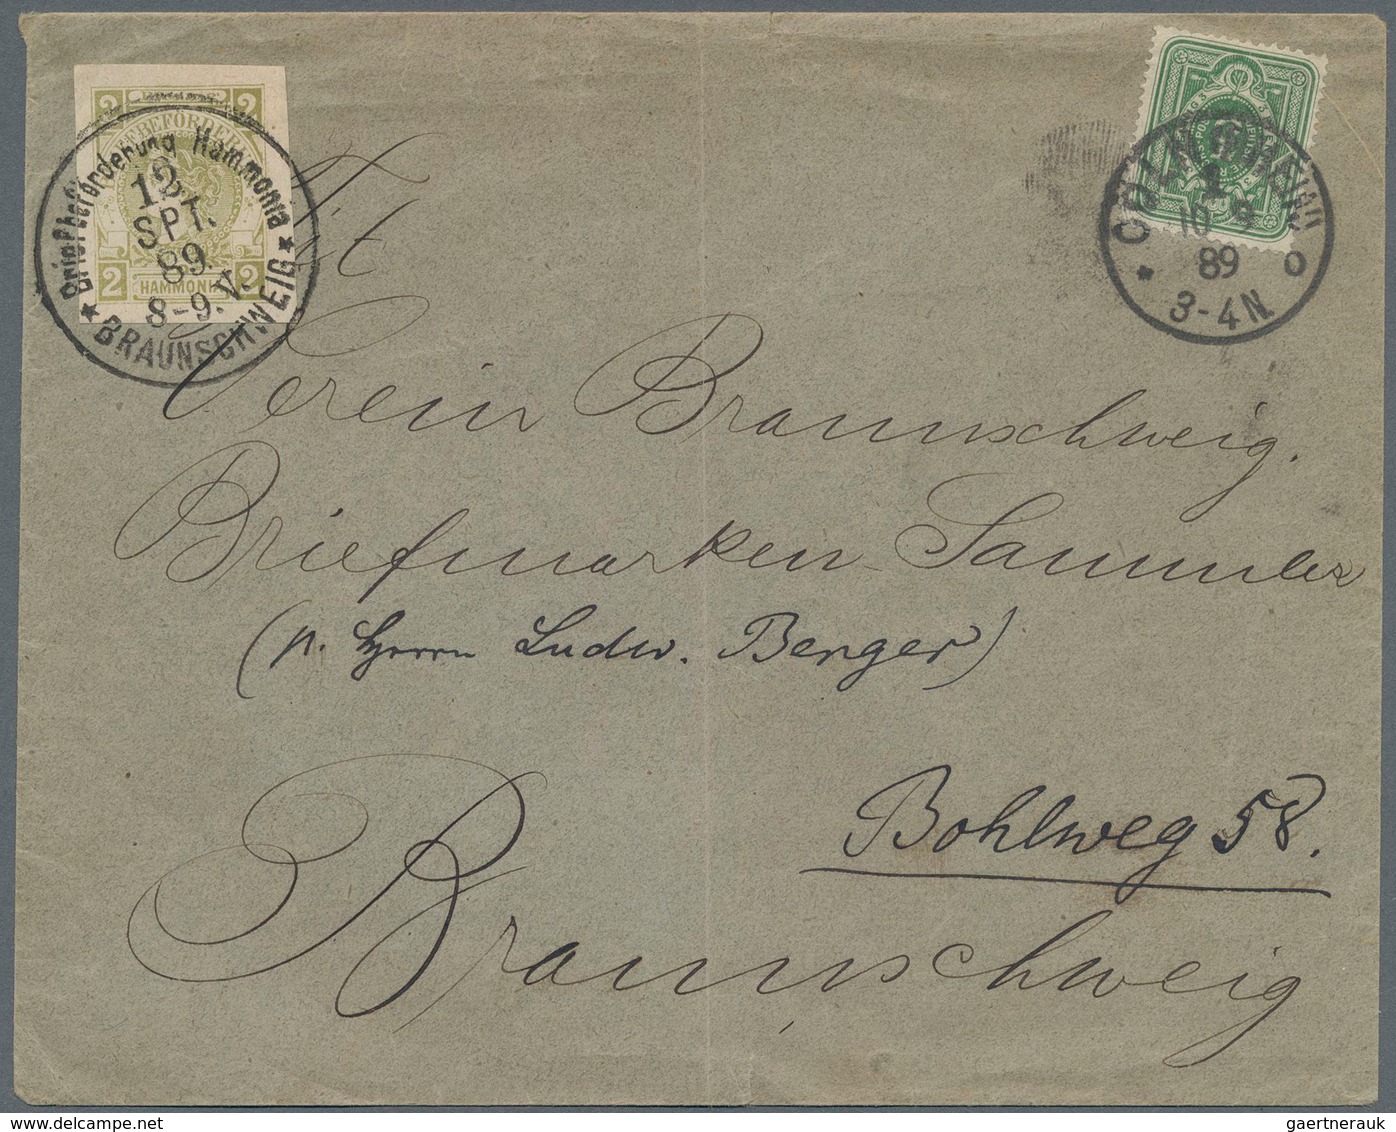 Deutsches Reich - Privatpost (Stadtpost): 1889, HAMNONIA BRAUNSCHWEIG; 2 Pfg. Privatpost I (Hamburge - Postes Privées & Locales